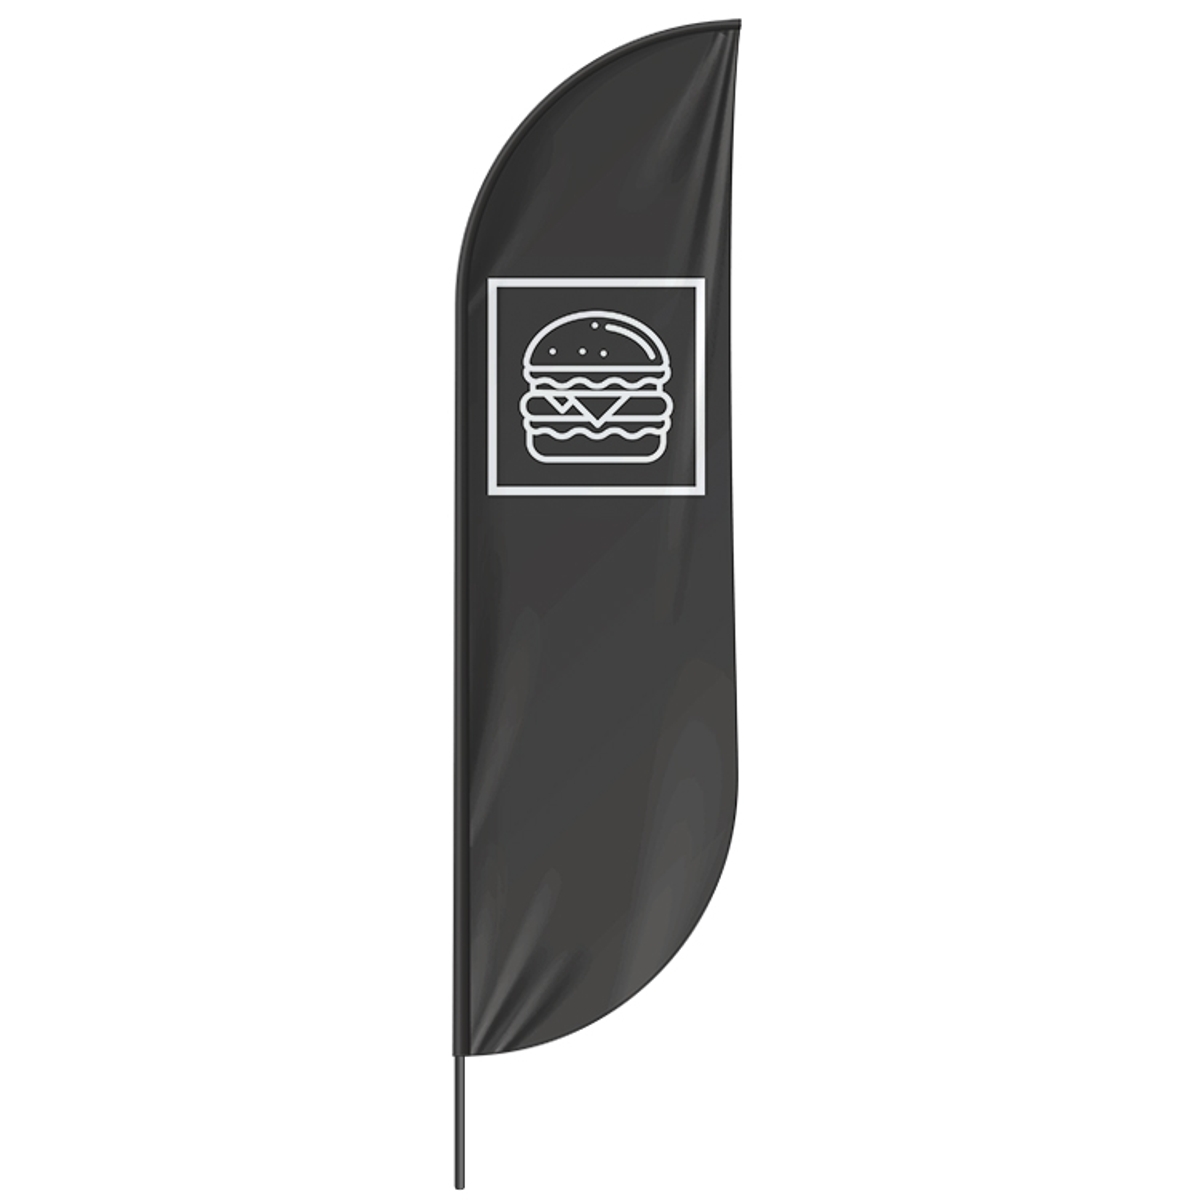 Beachflag Burger - 3 Modelle - 4 Größen